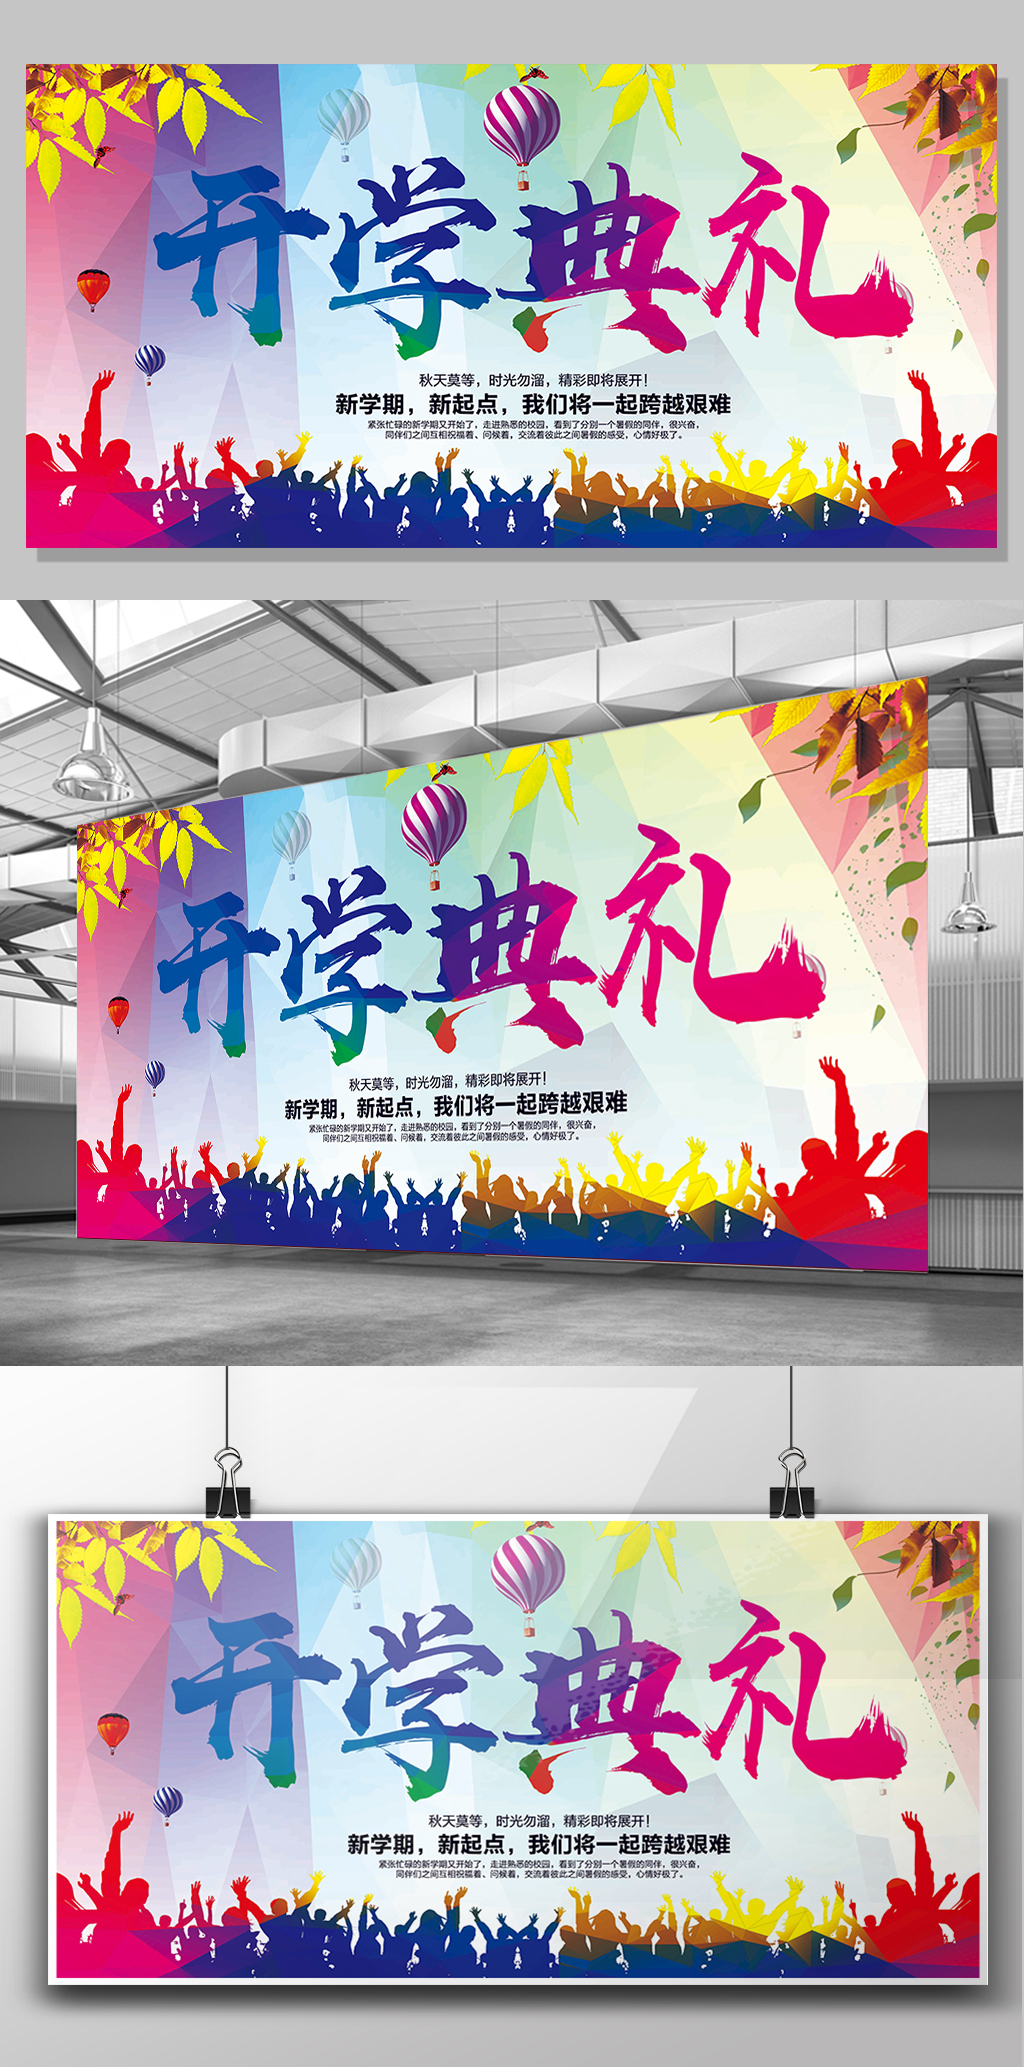 彩色时尚学校开学典礼展板背景设计模板下载图片